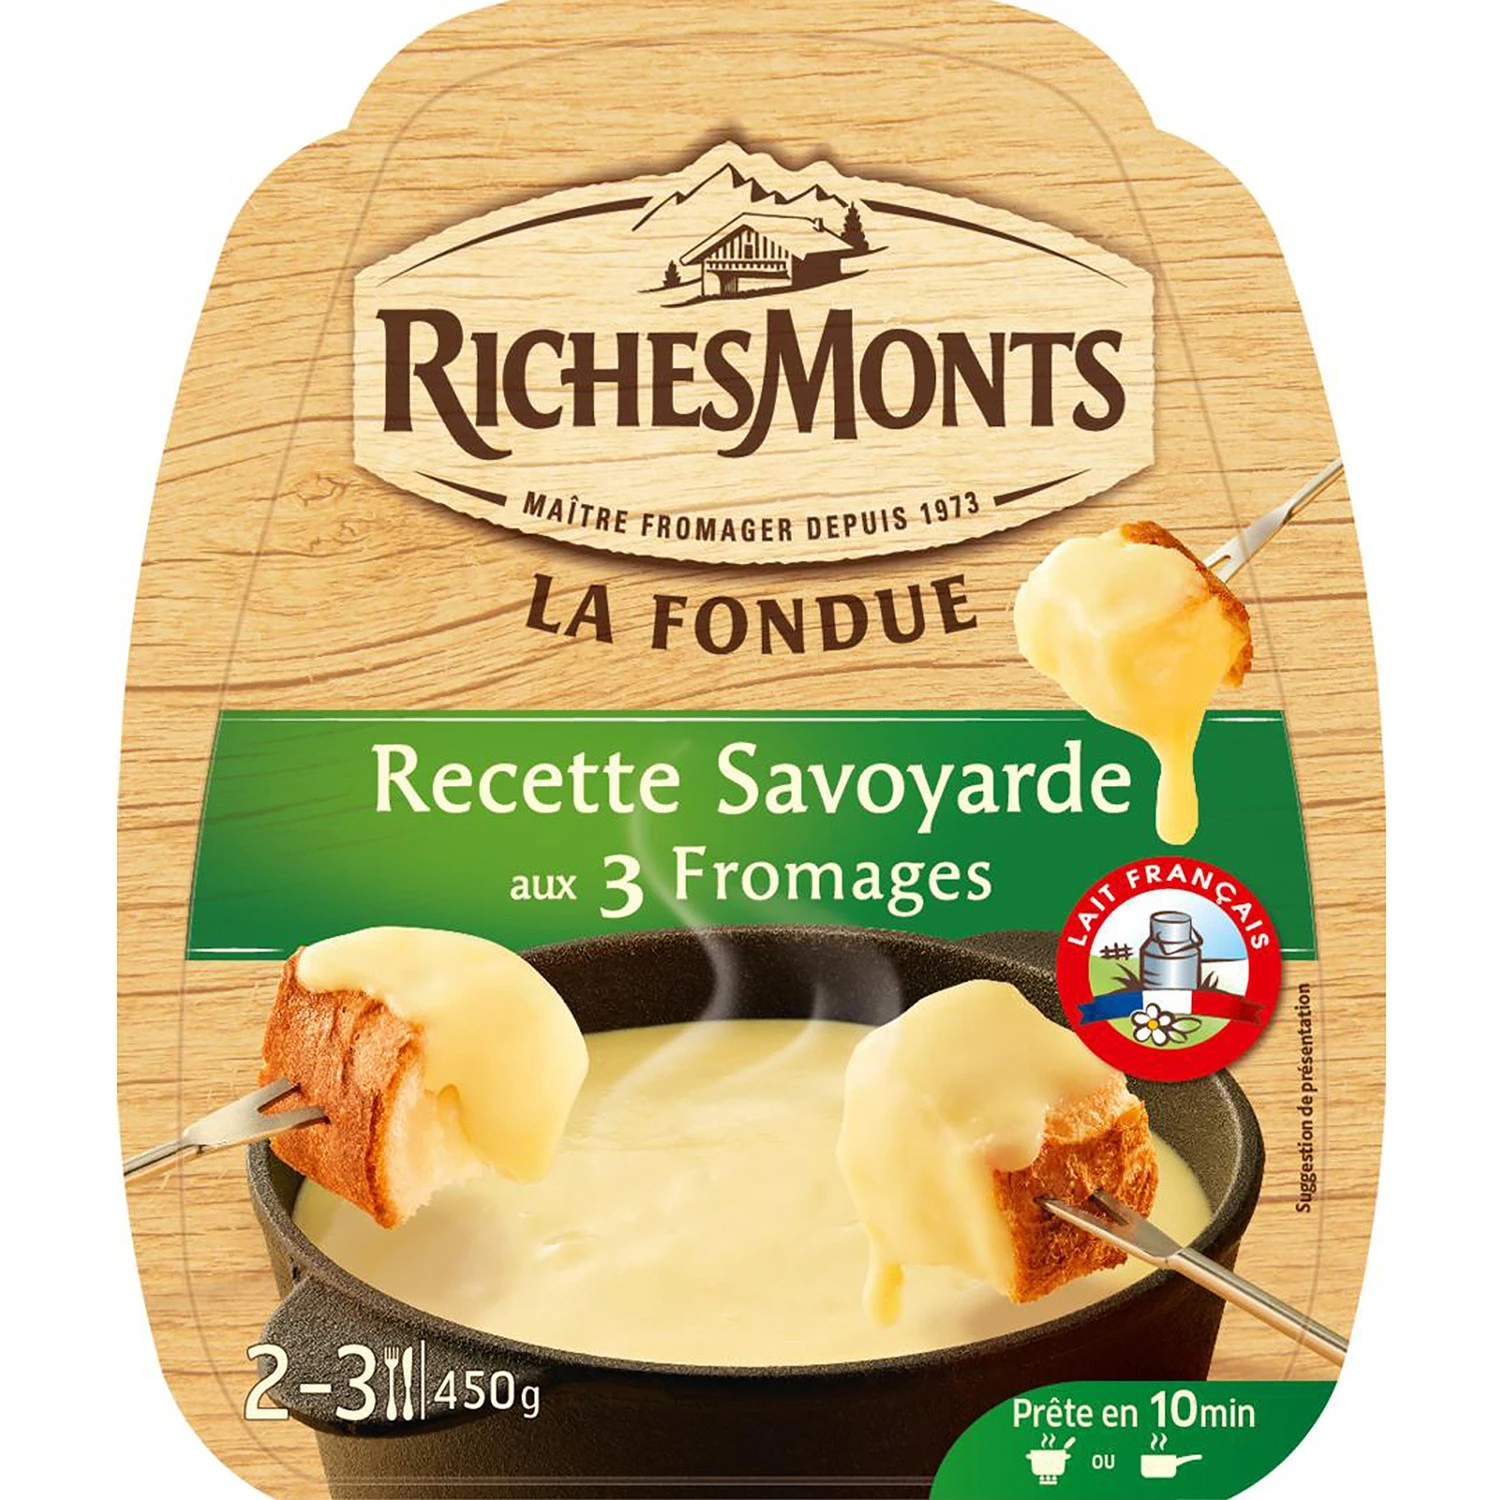 RichesMonts cheese fondue preparation 450g